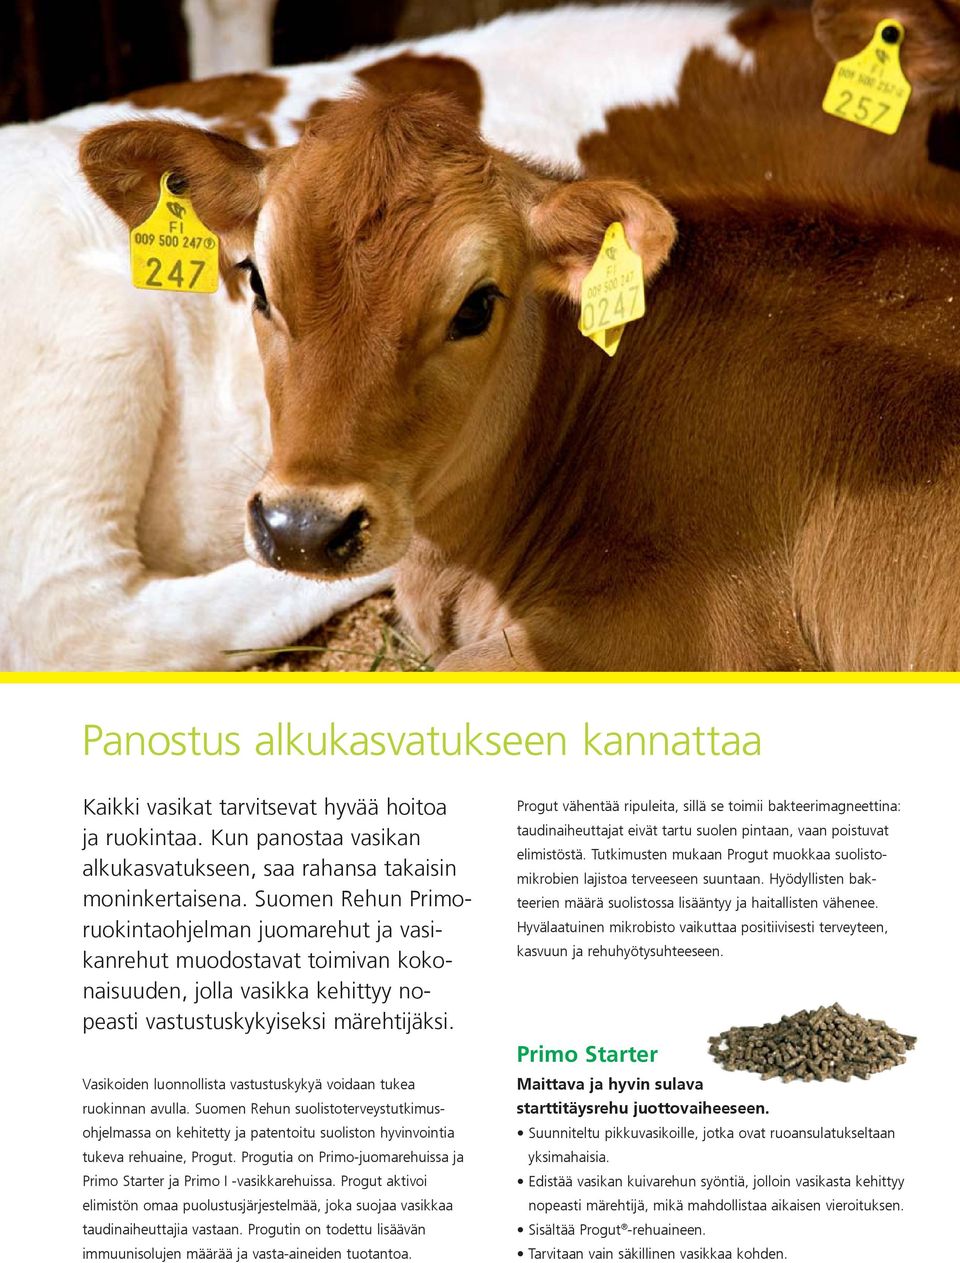 Vasikoiden luonnollista vastustuskykyä voidaan tukea ruokinnan avulla. Suomen Rehun suolistoterveystutkimusohjelmassa on kehitetty ja patentoitu suoliston hyvinvointia tukeva rehuaine, Progut.